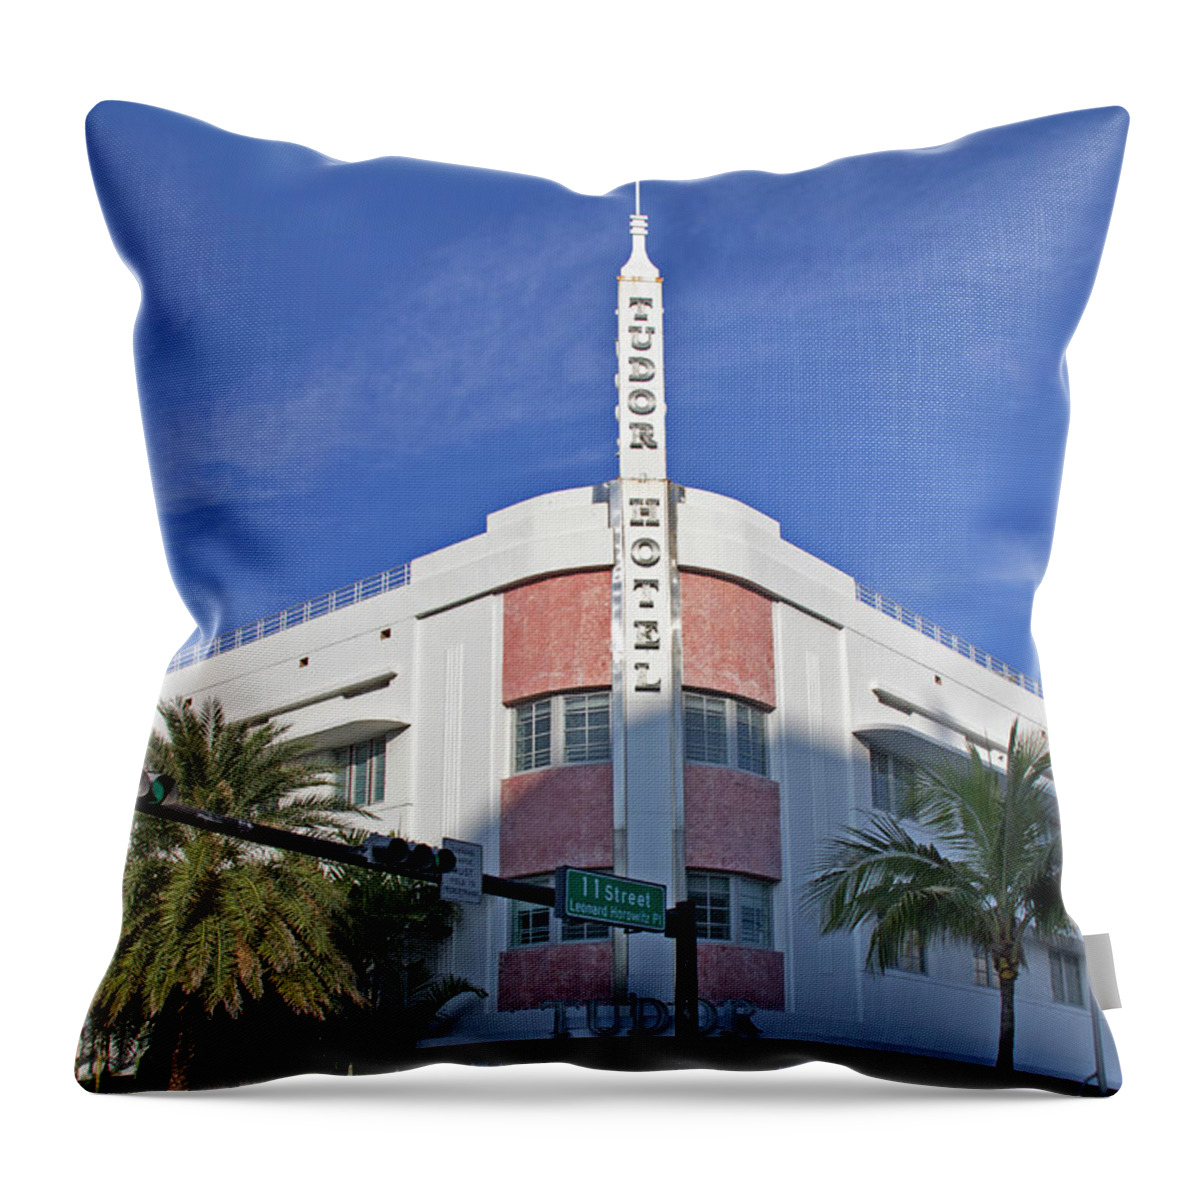 Art Deco Throw Pillow featuring the photograph Art Deco - South Beach - Miami Beach #1 by Richard Krebs